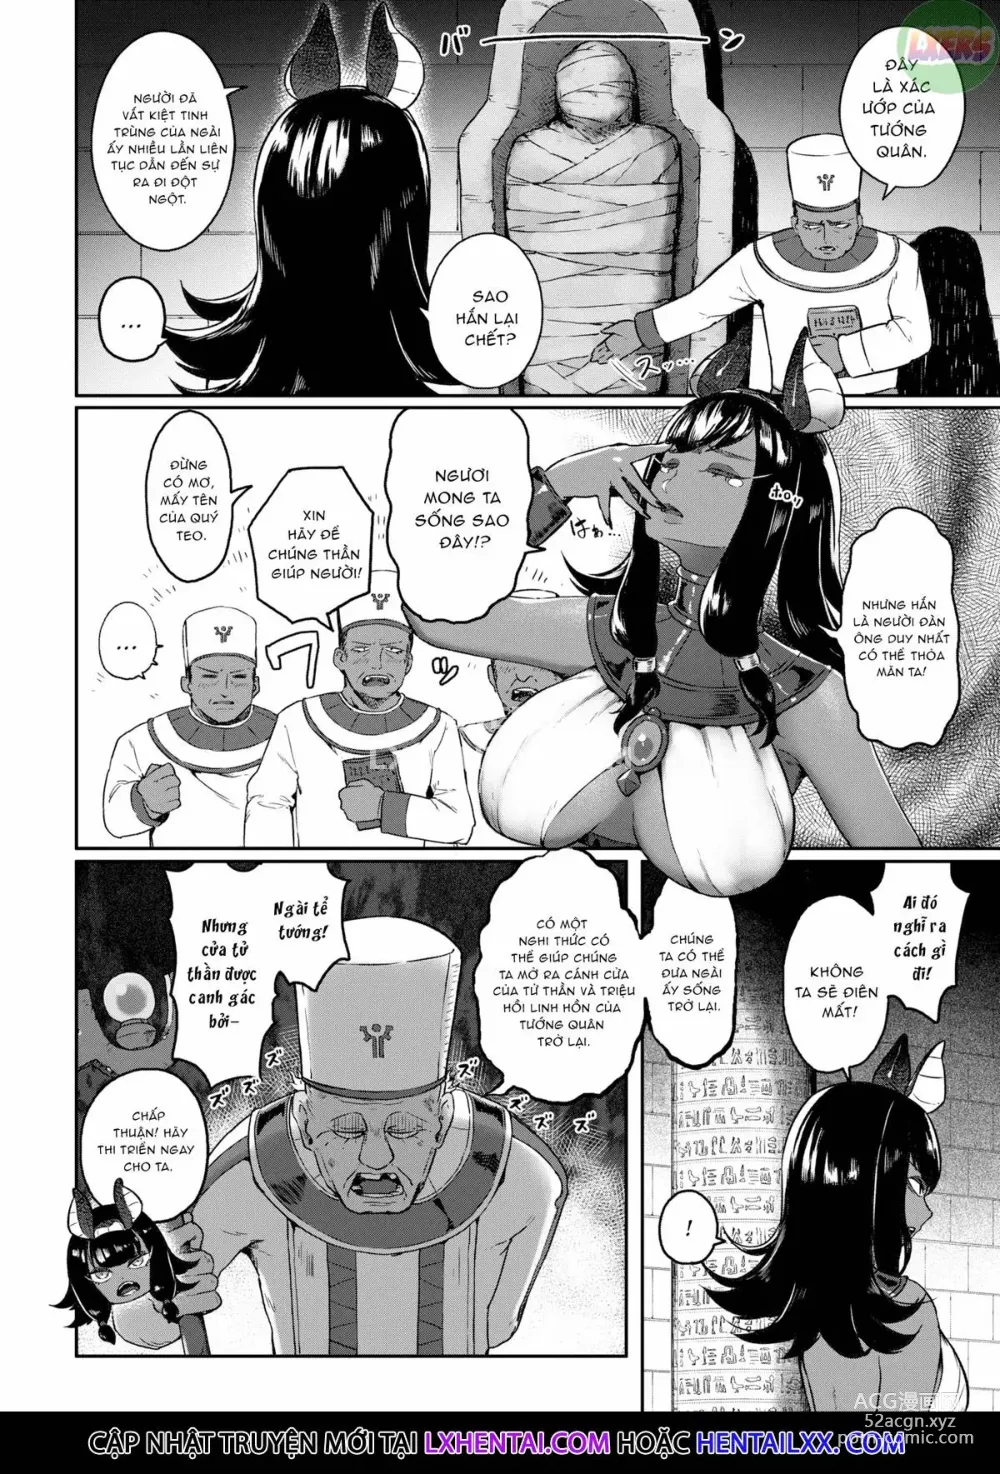 Page 4 of manga Doerogurifu (uncensored)